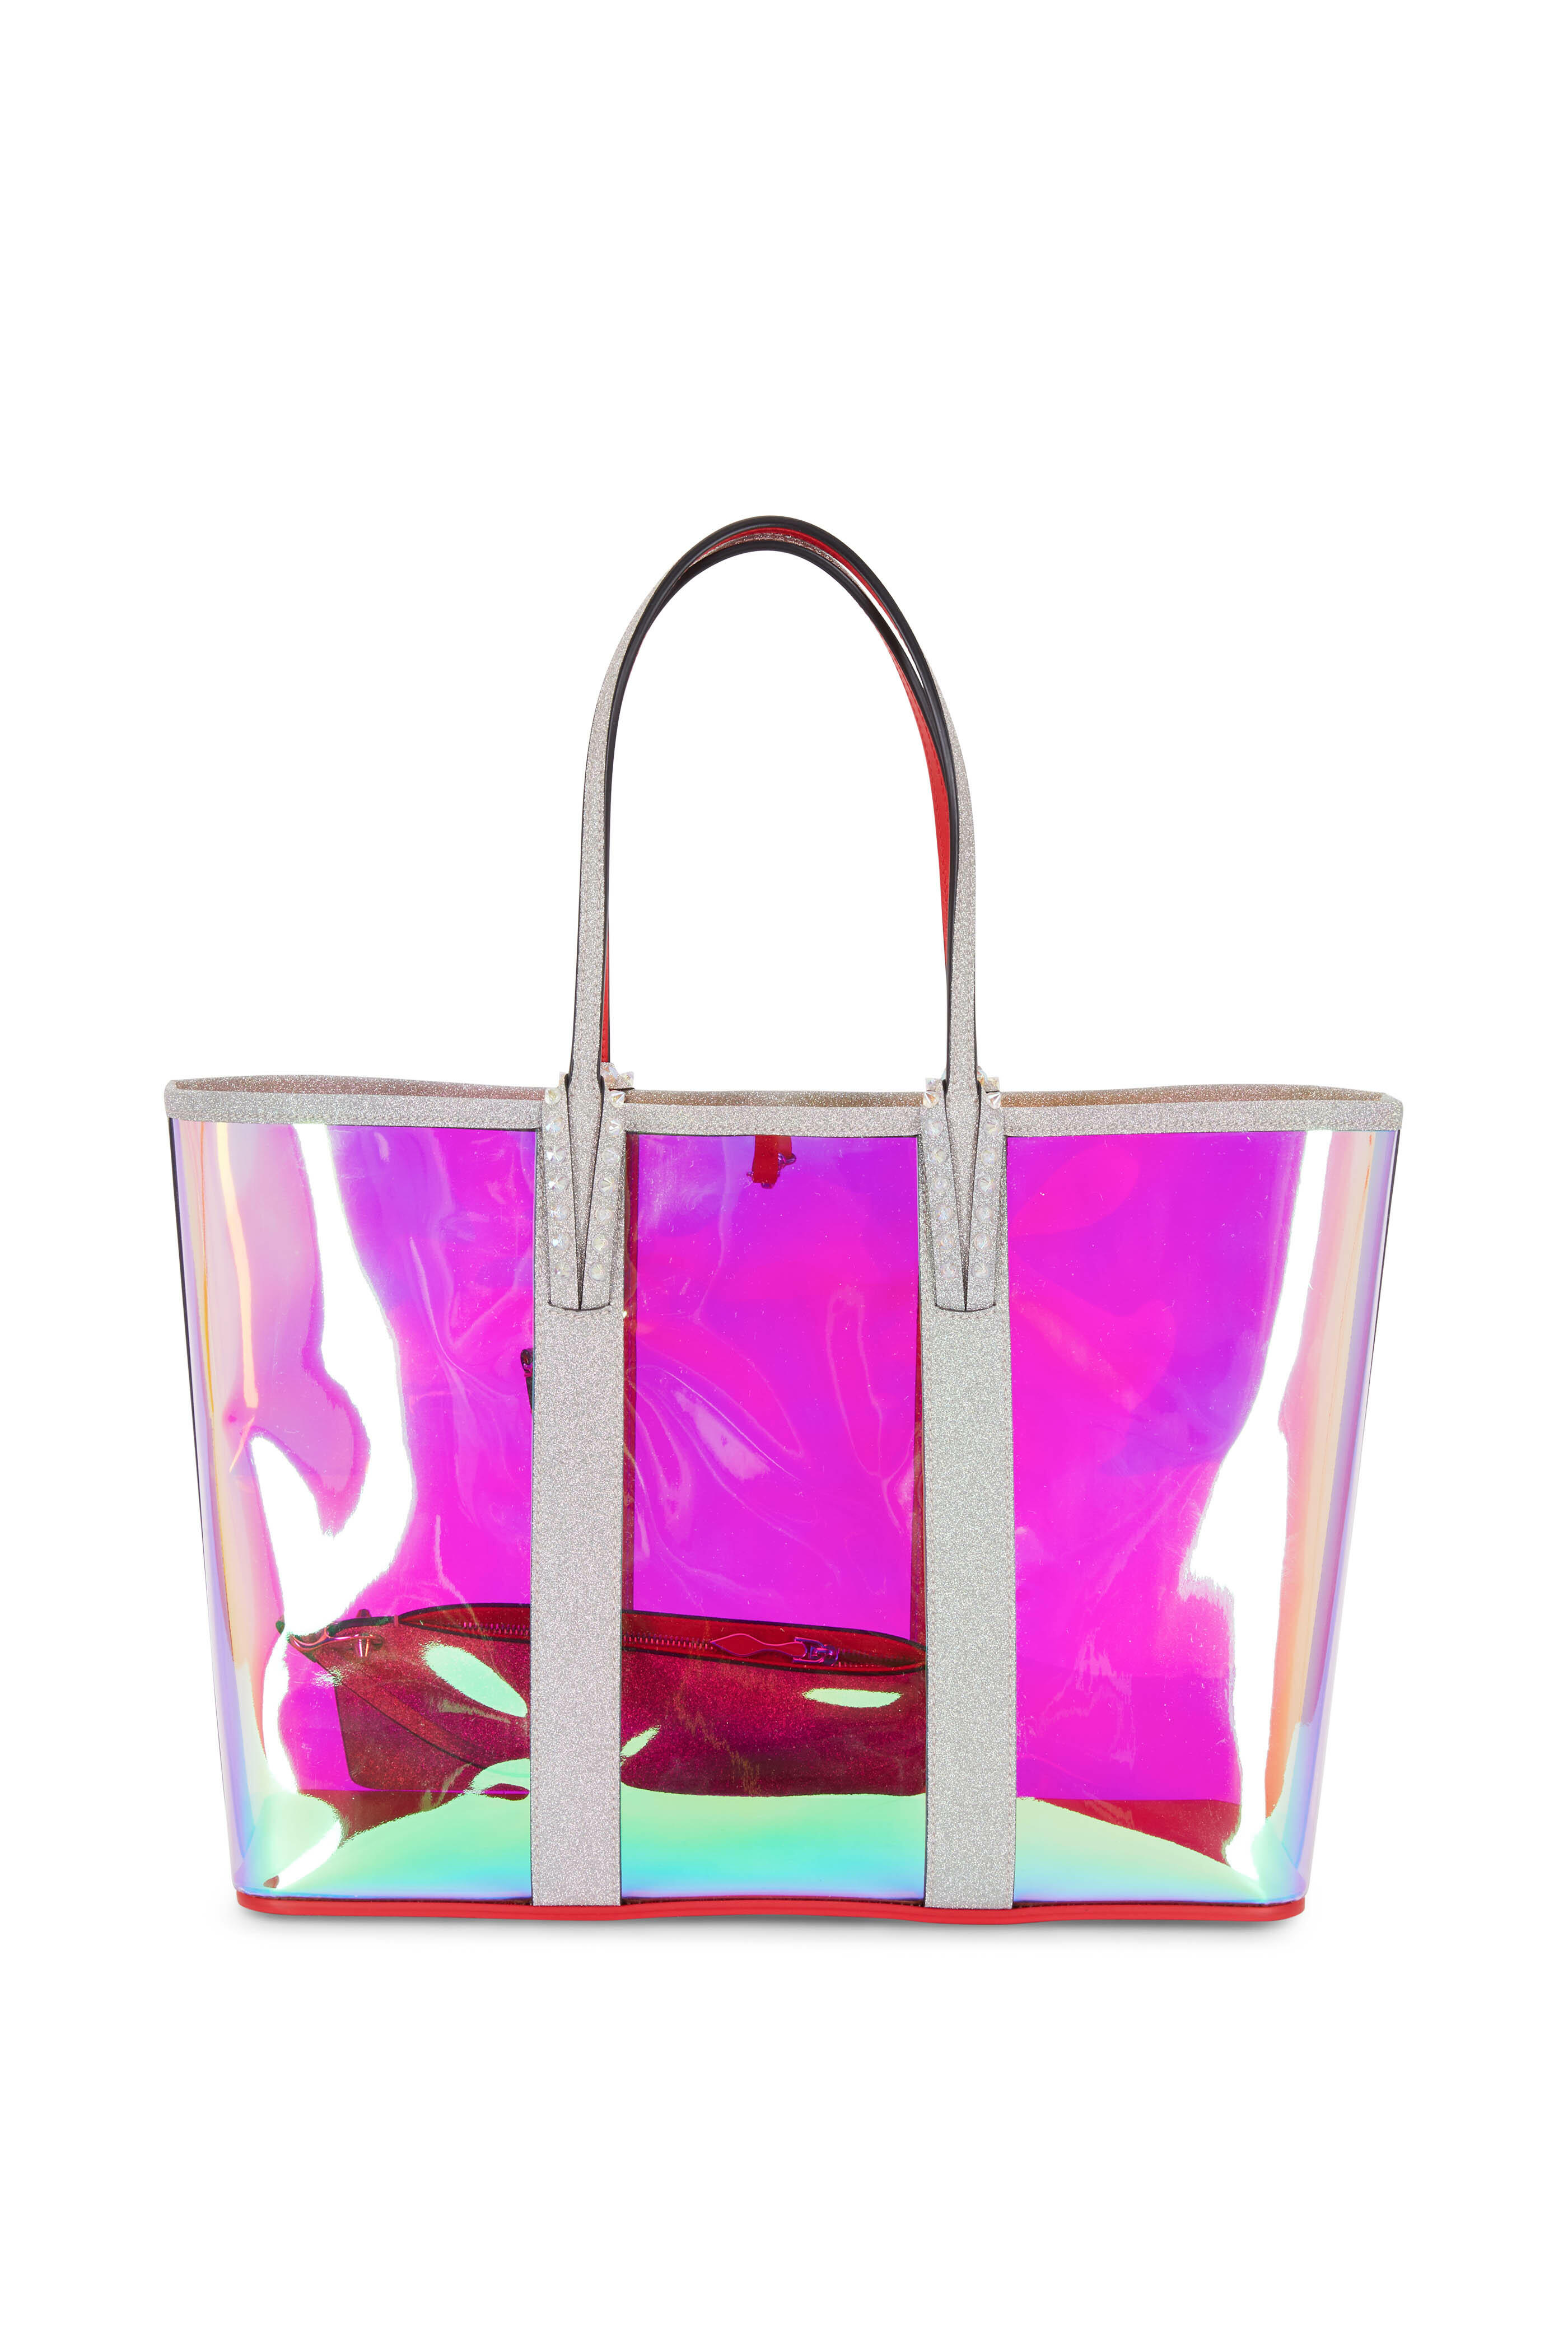 Christian Louboutin Cabata Logo-detailed Tote Bag in Pink